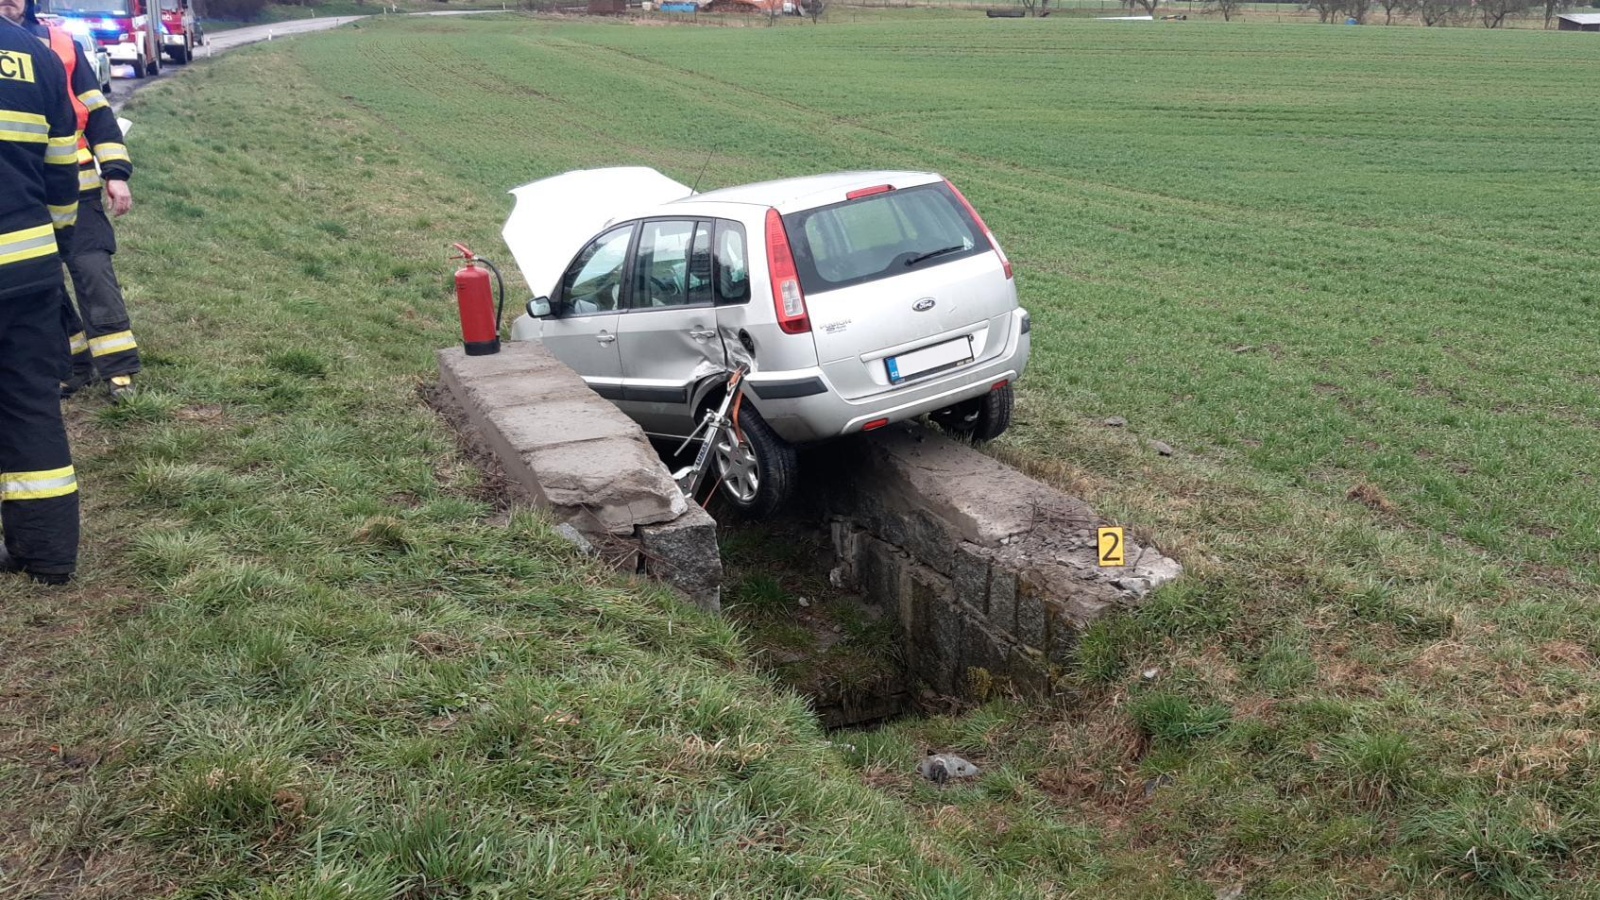 061-Havárie vozidla v lokalitě V Radeninách jižně od Březnice na Příbramsku.jpg